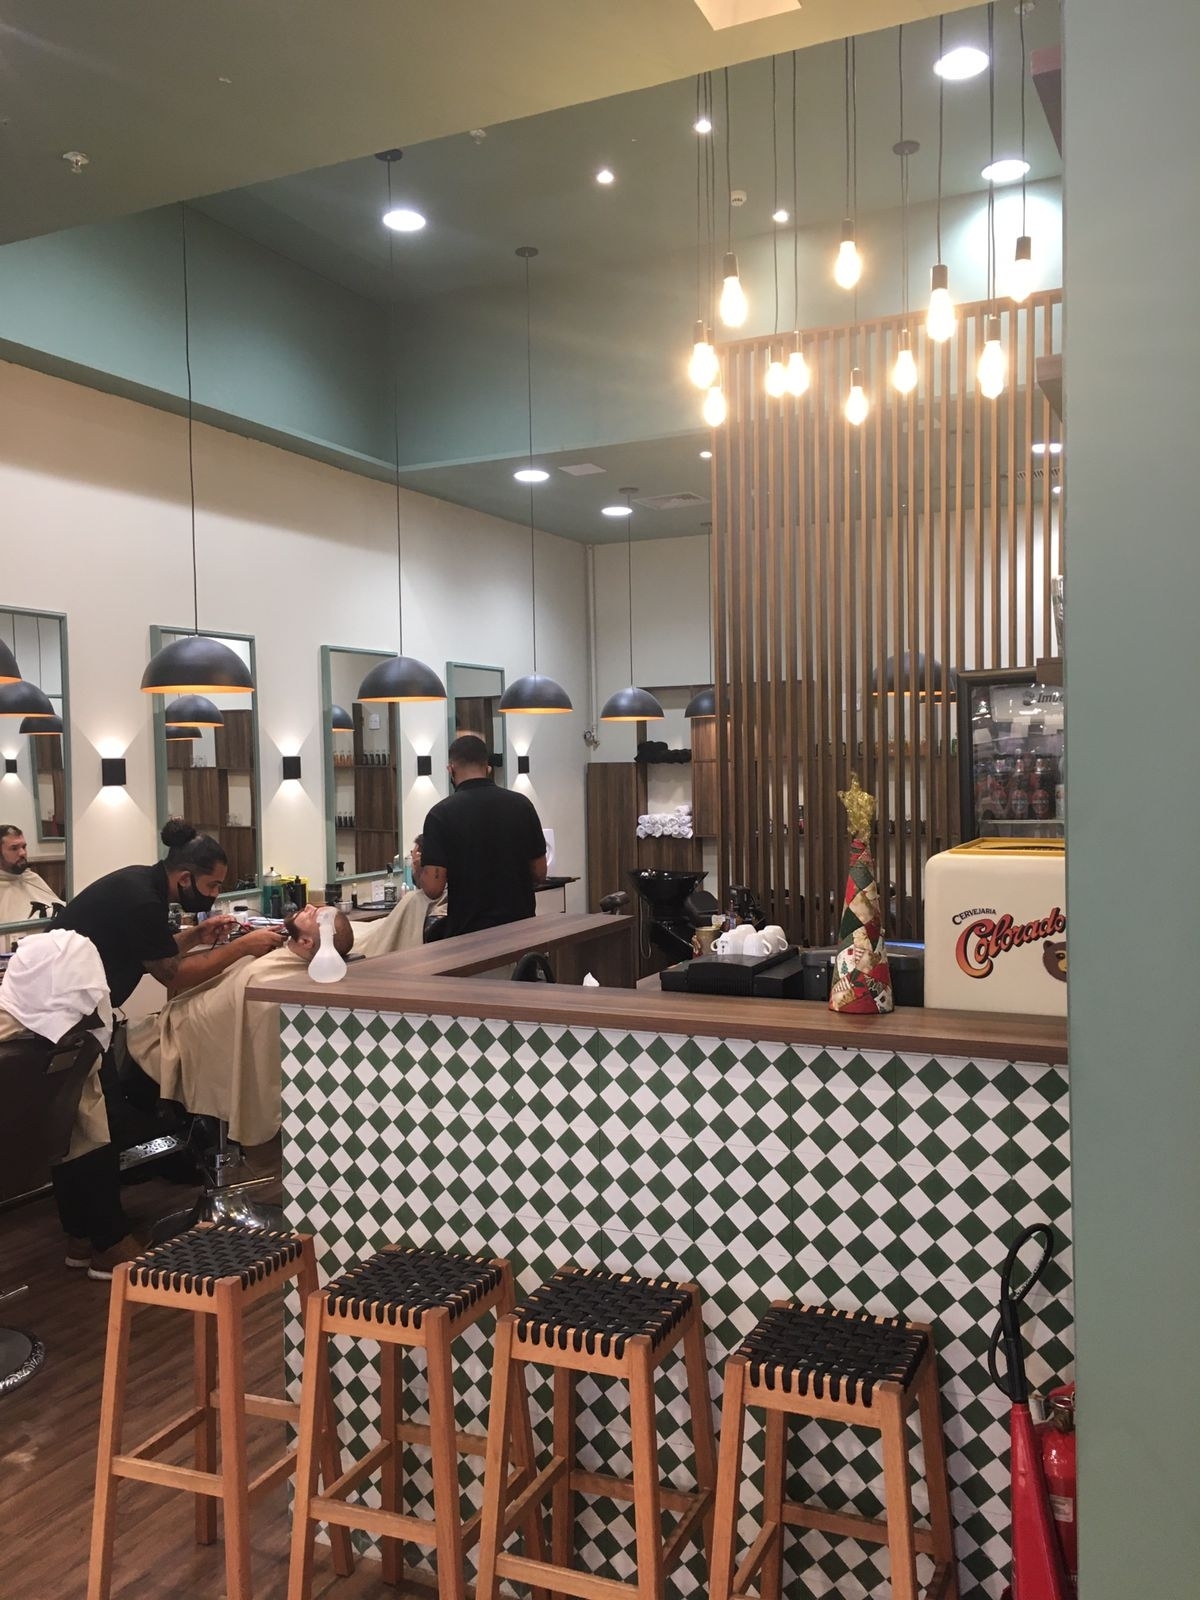 Vendo Barbearia com duas unidades em shopping do Rio de Janeiro